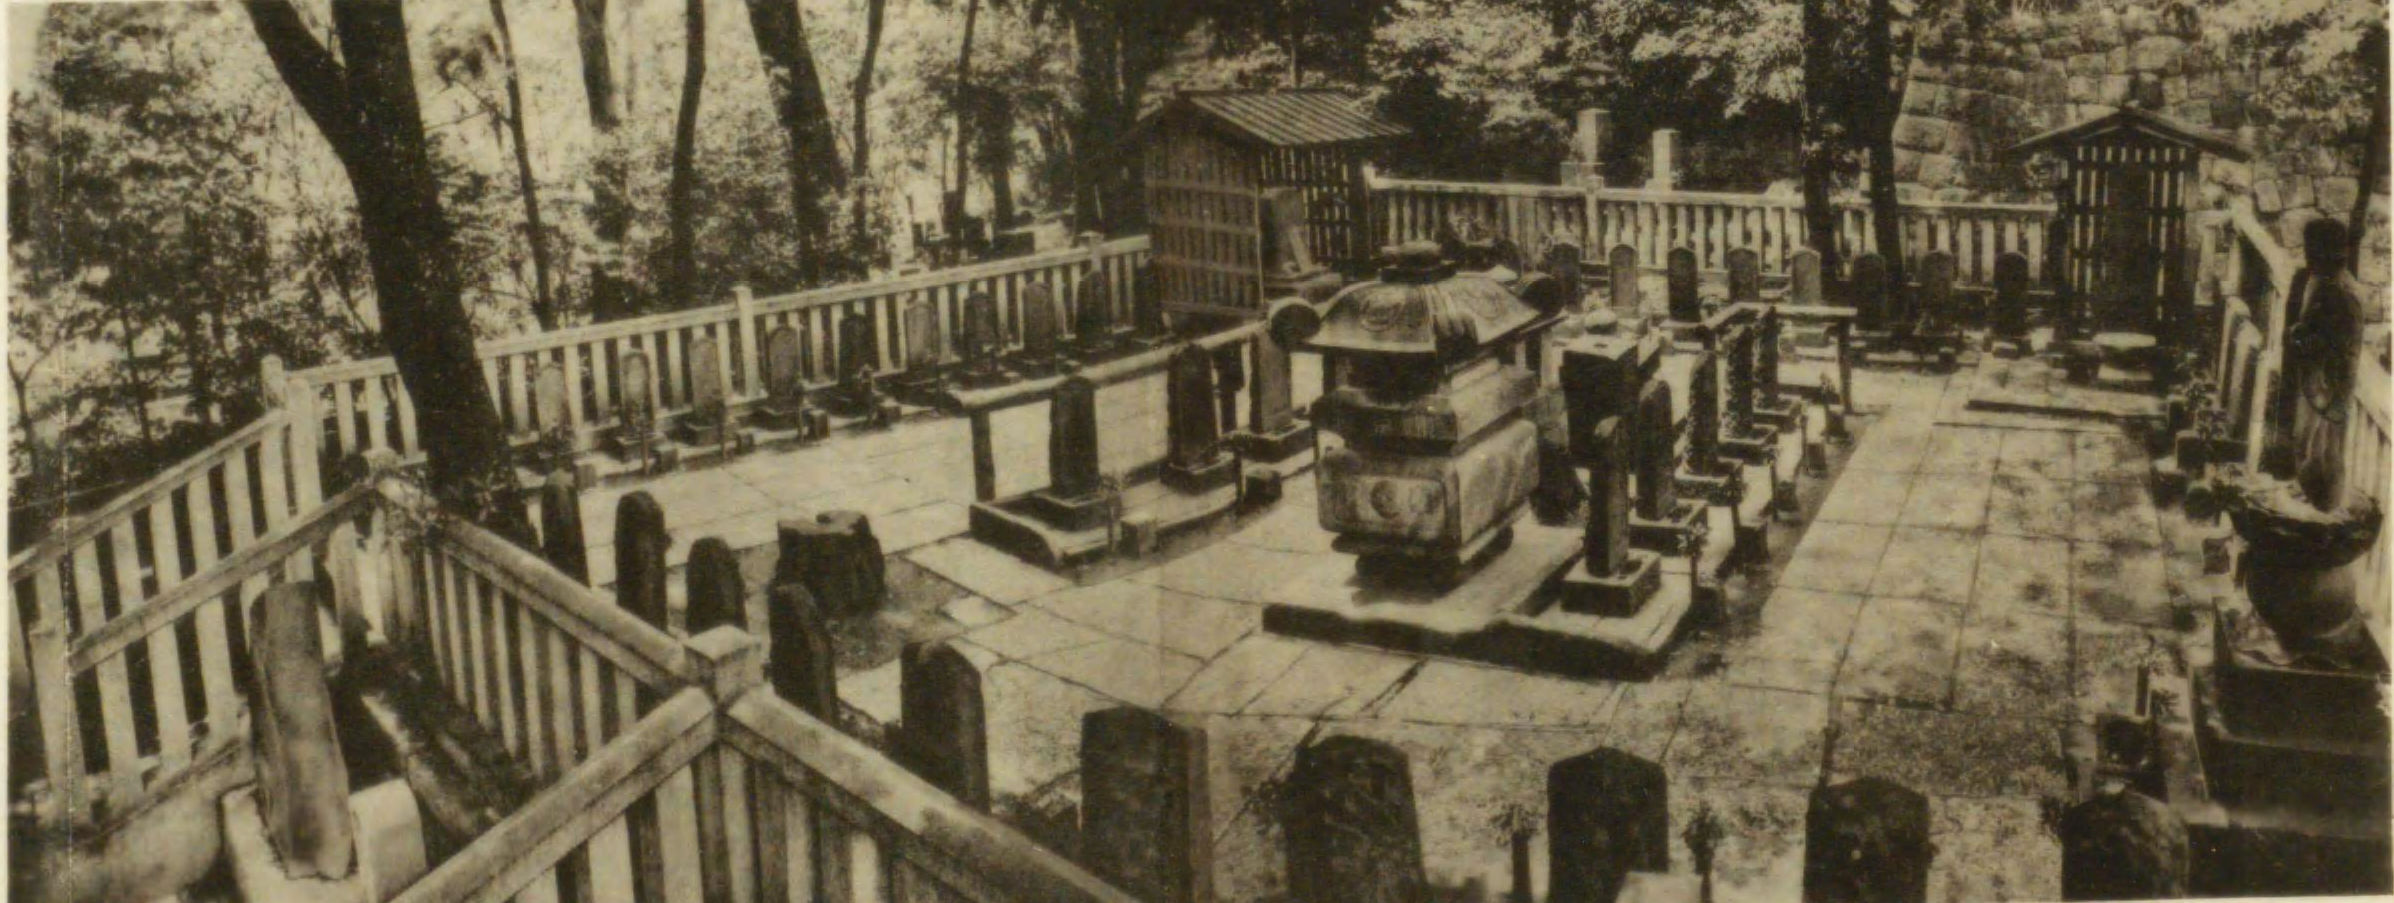 Map of ronin graves at Sengakuji Temple